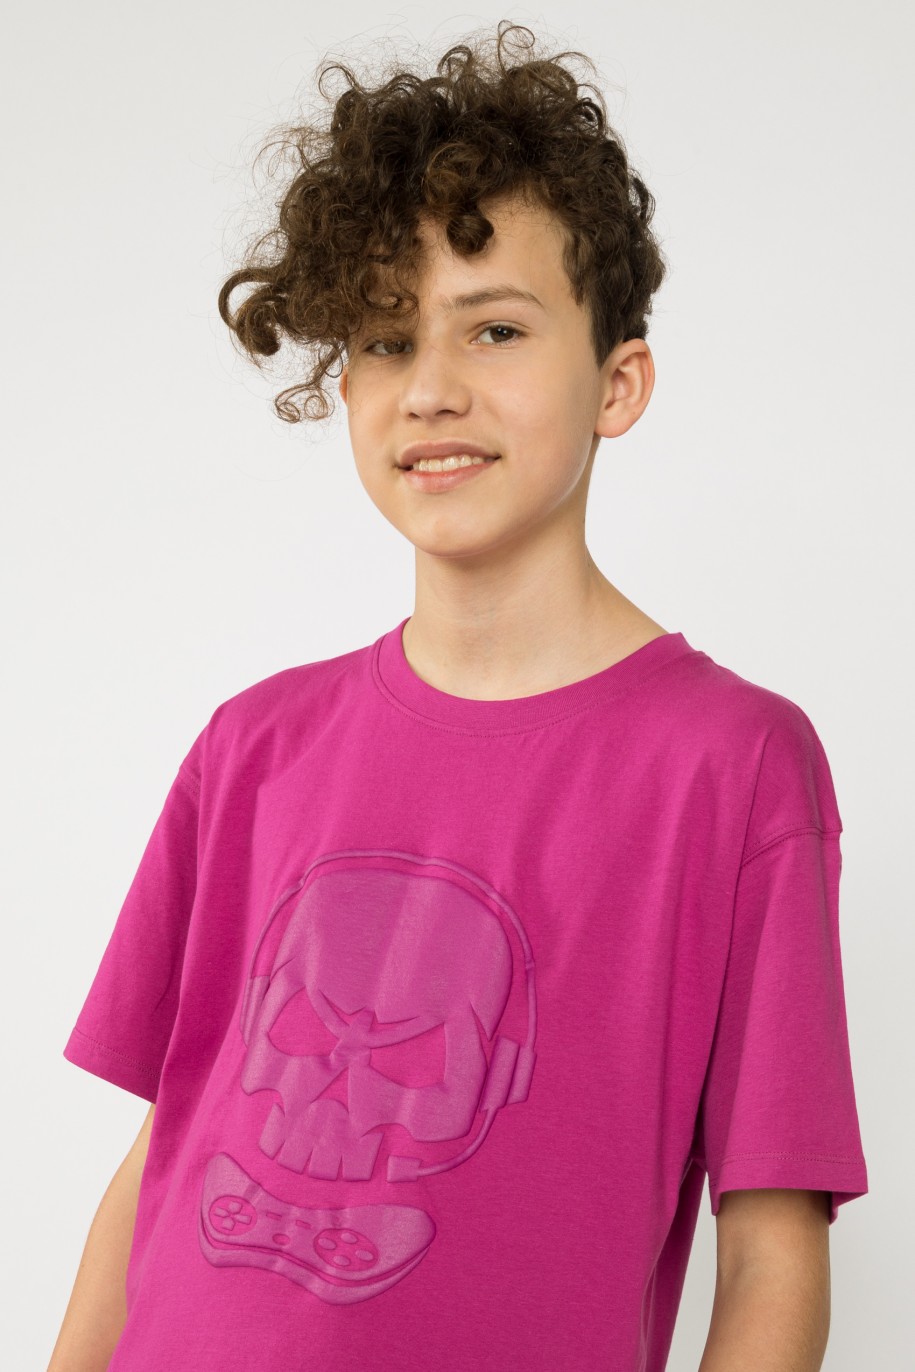 Fioletowy t-shirt z nadrukiem SKULL dla chłopaka - 33524